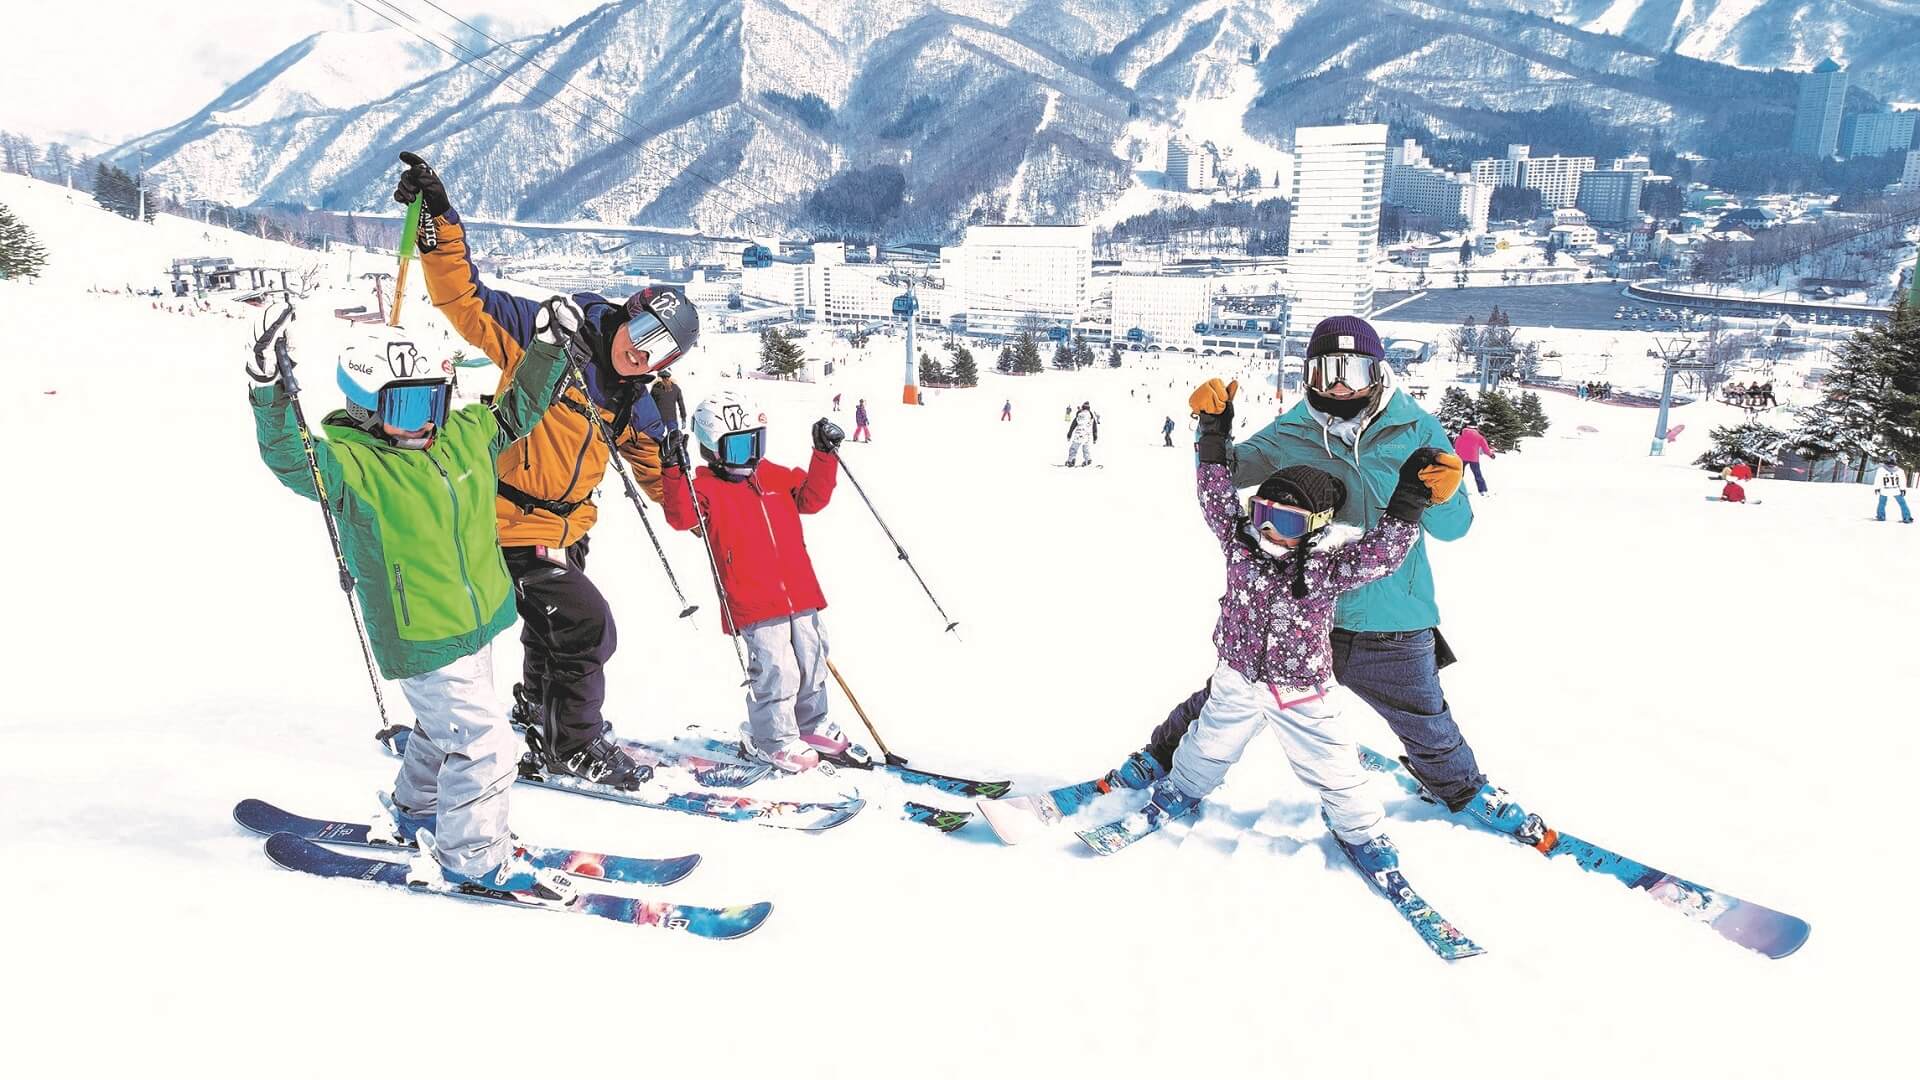 Семейный отдых на горнолыжном курорте